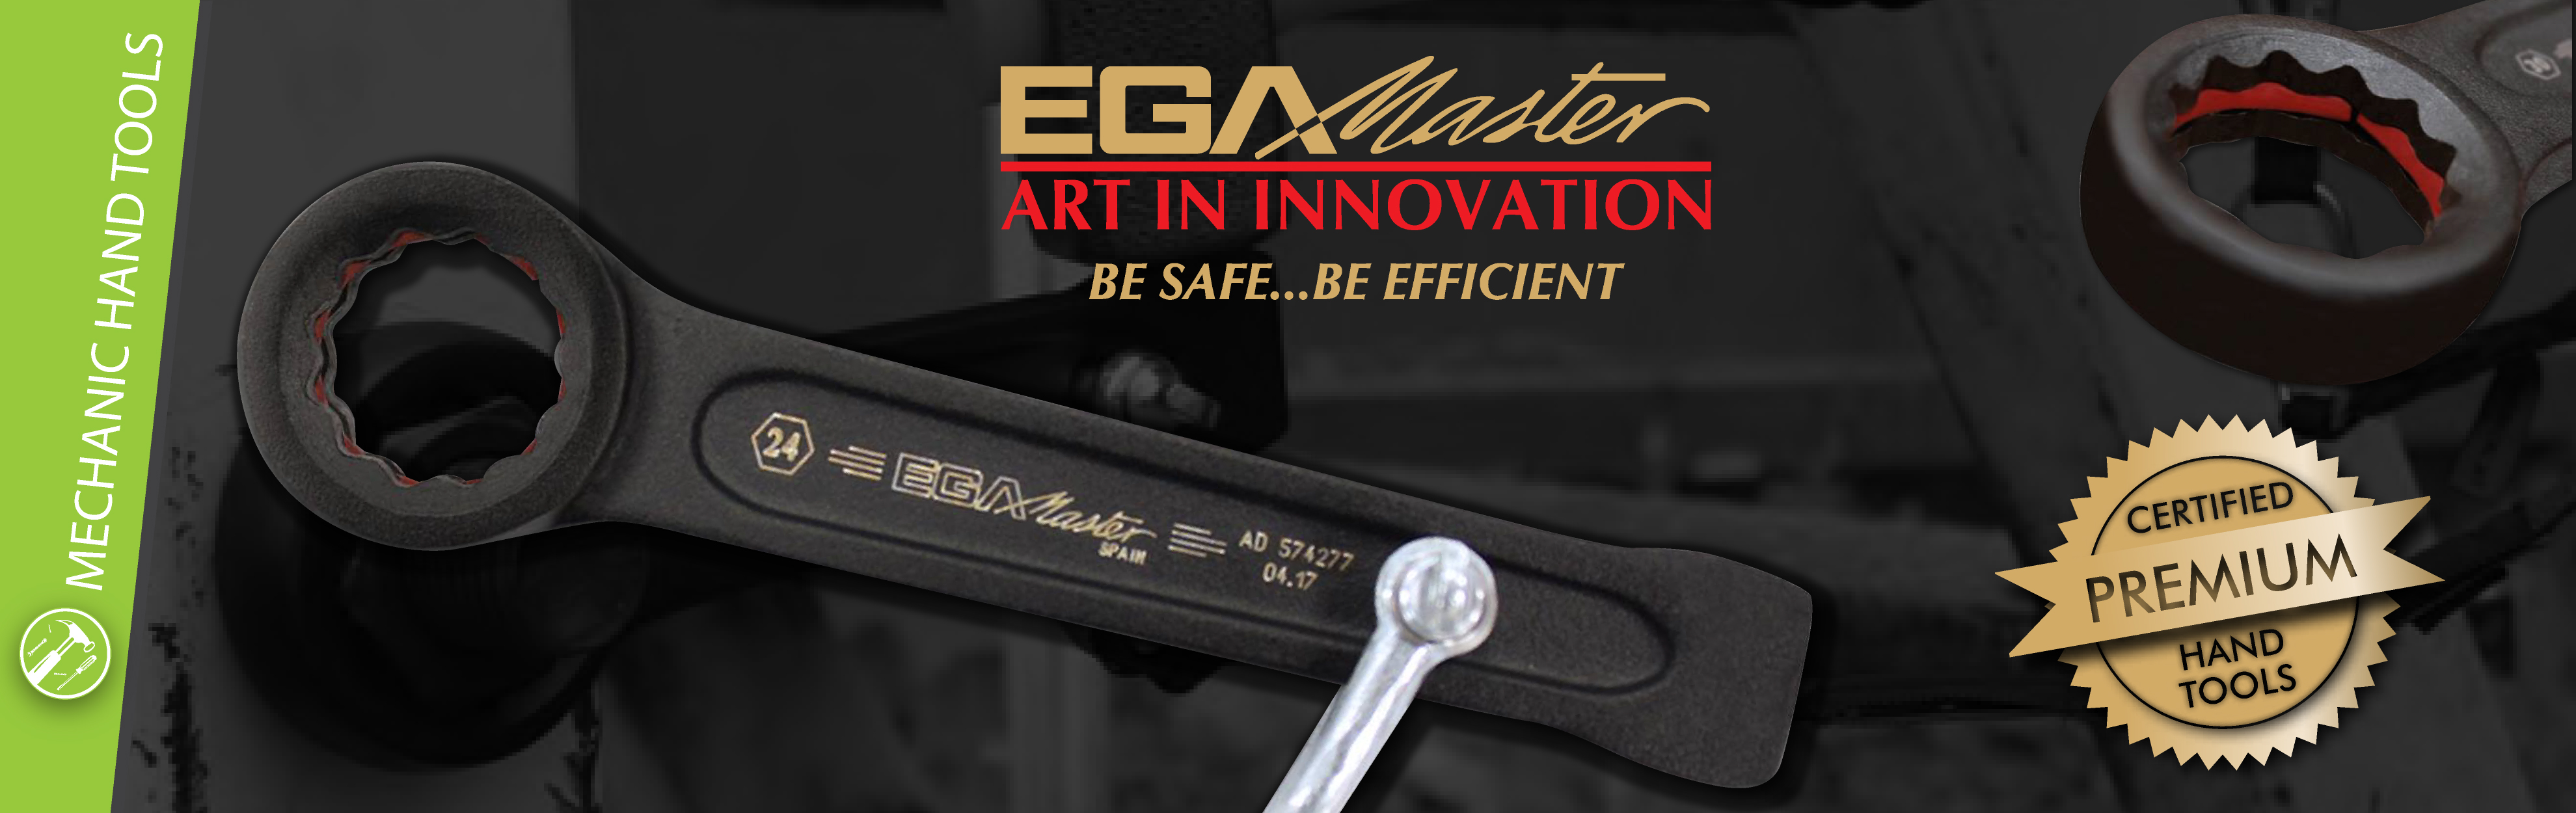 Ega Master - Premium Hand Tools